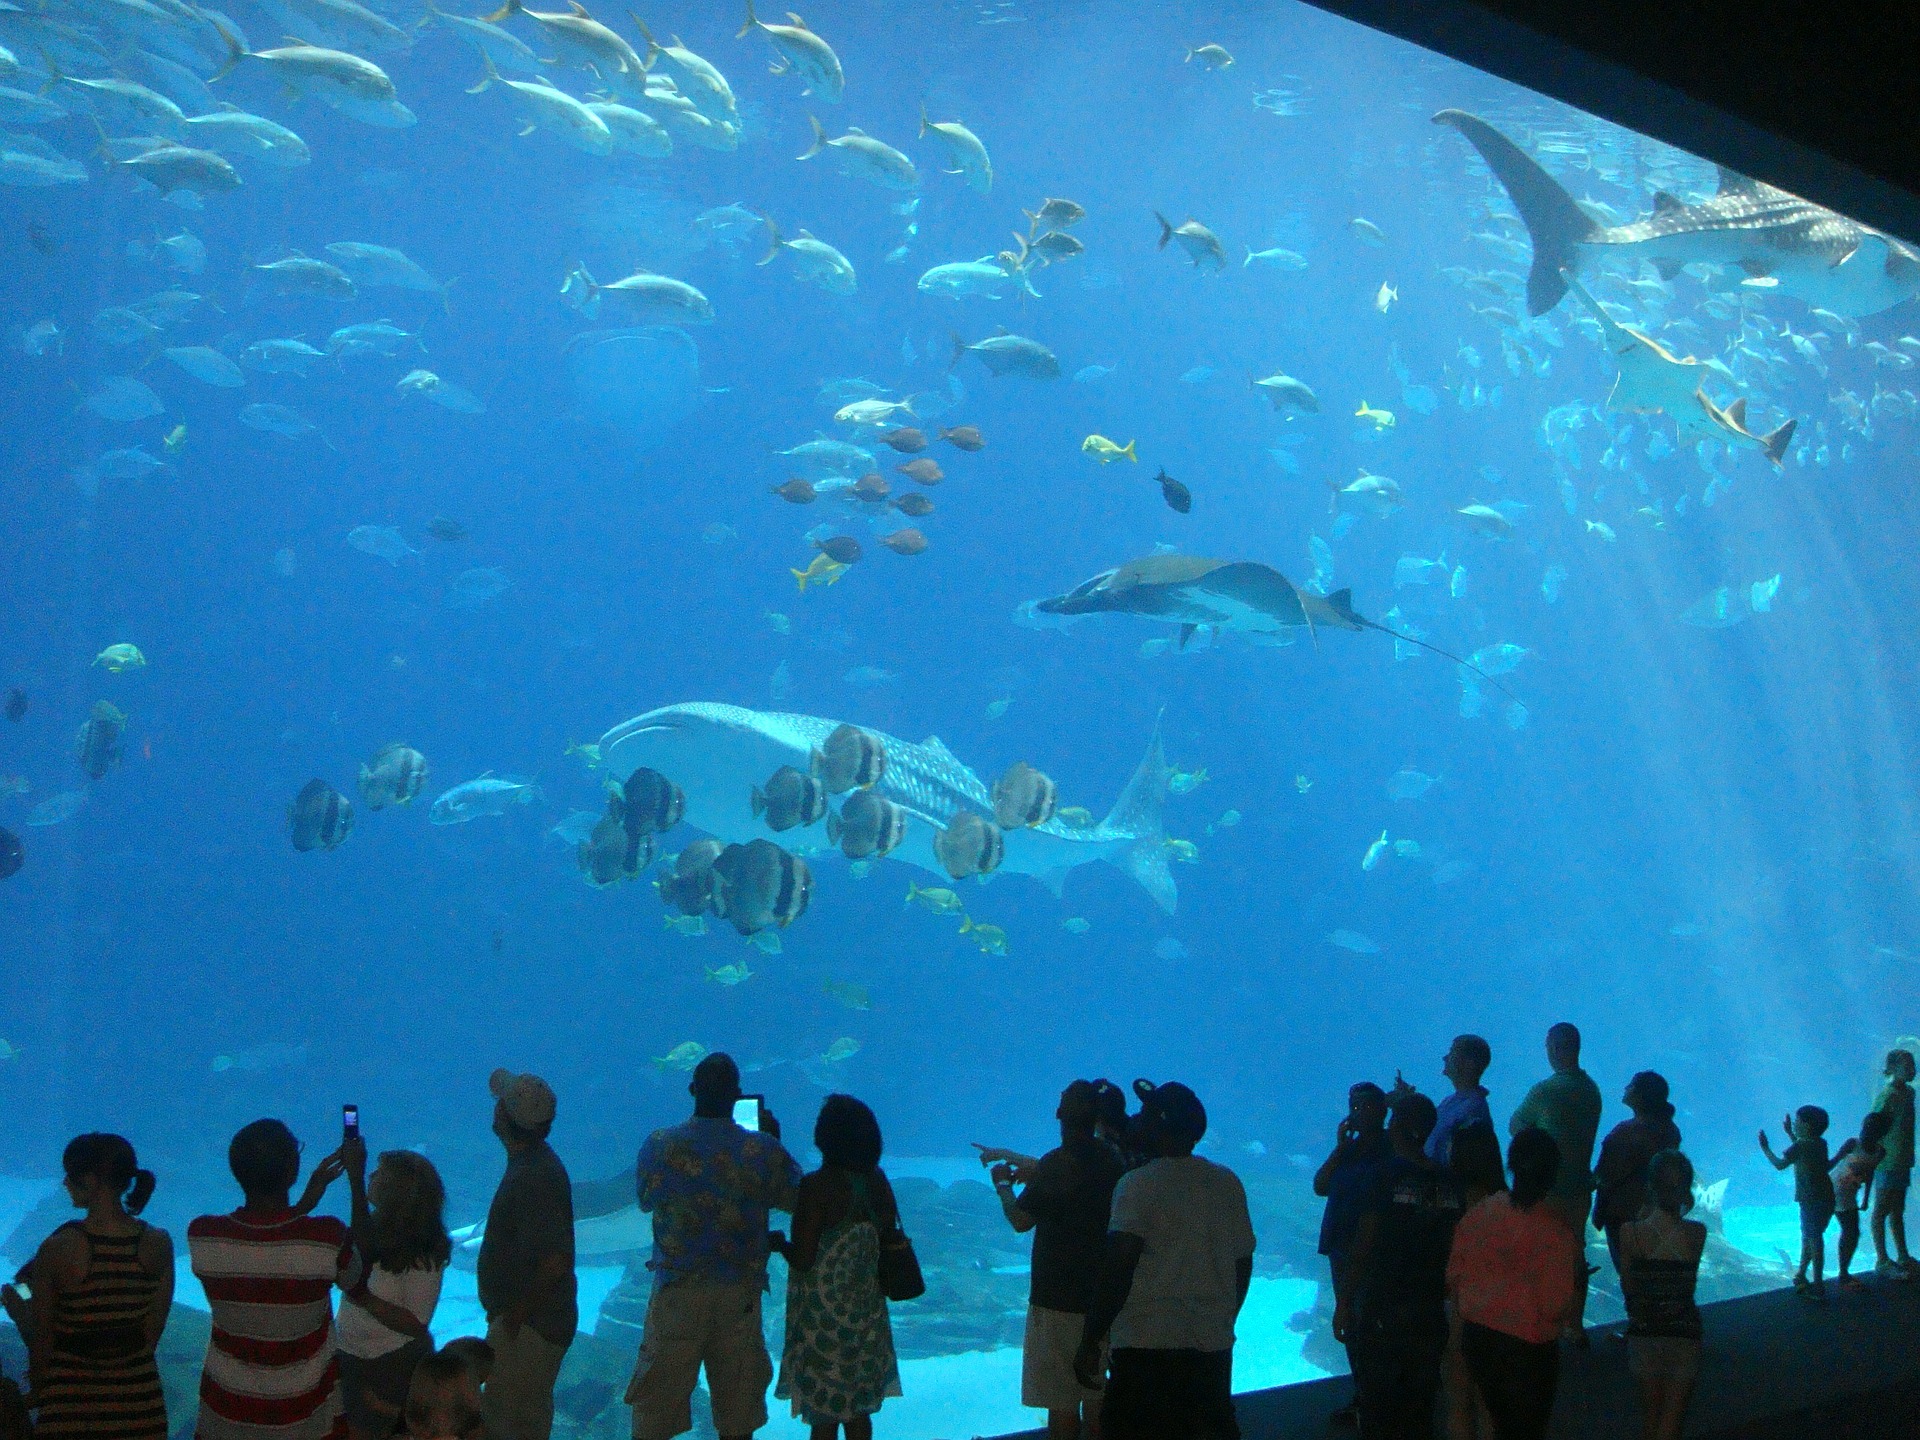 aquarium-456566_1920.jpg